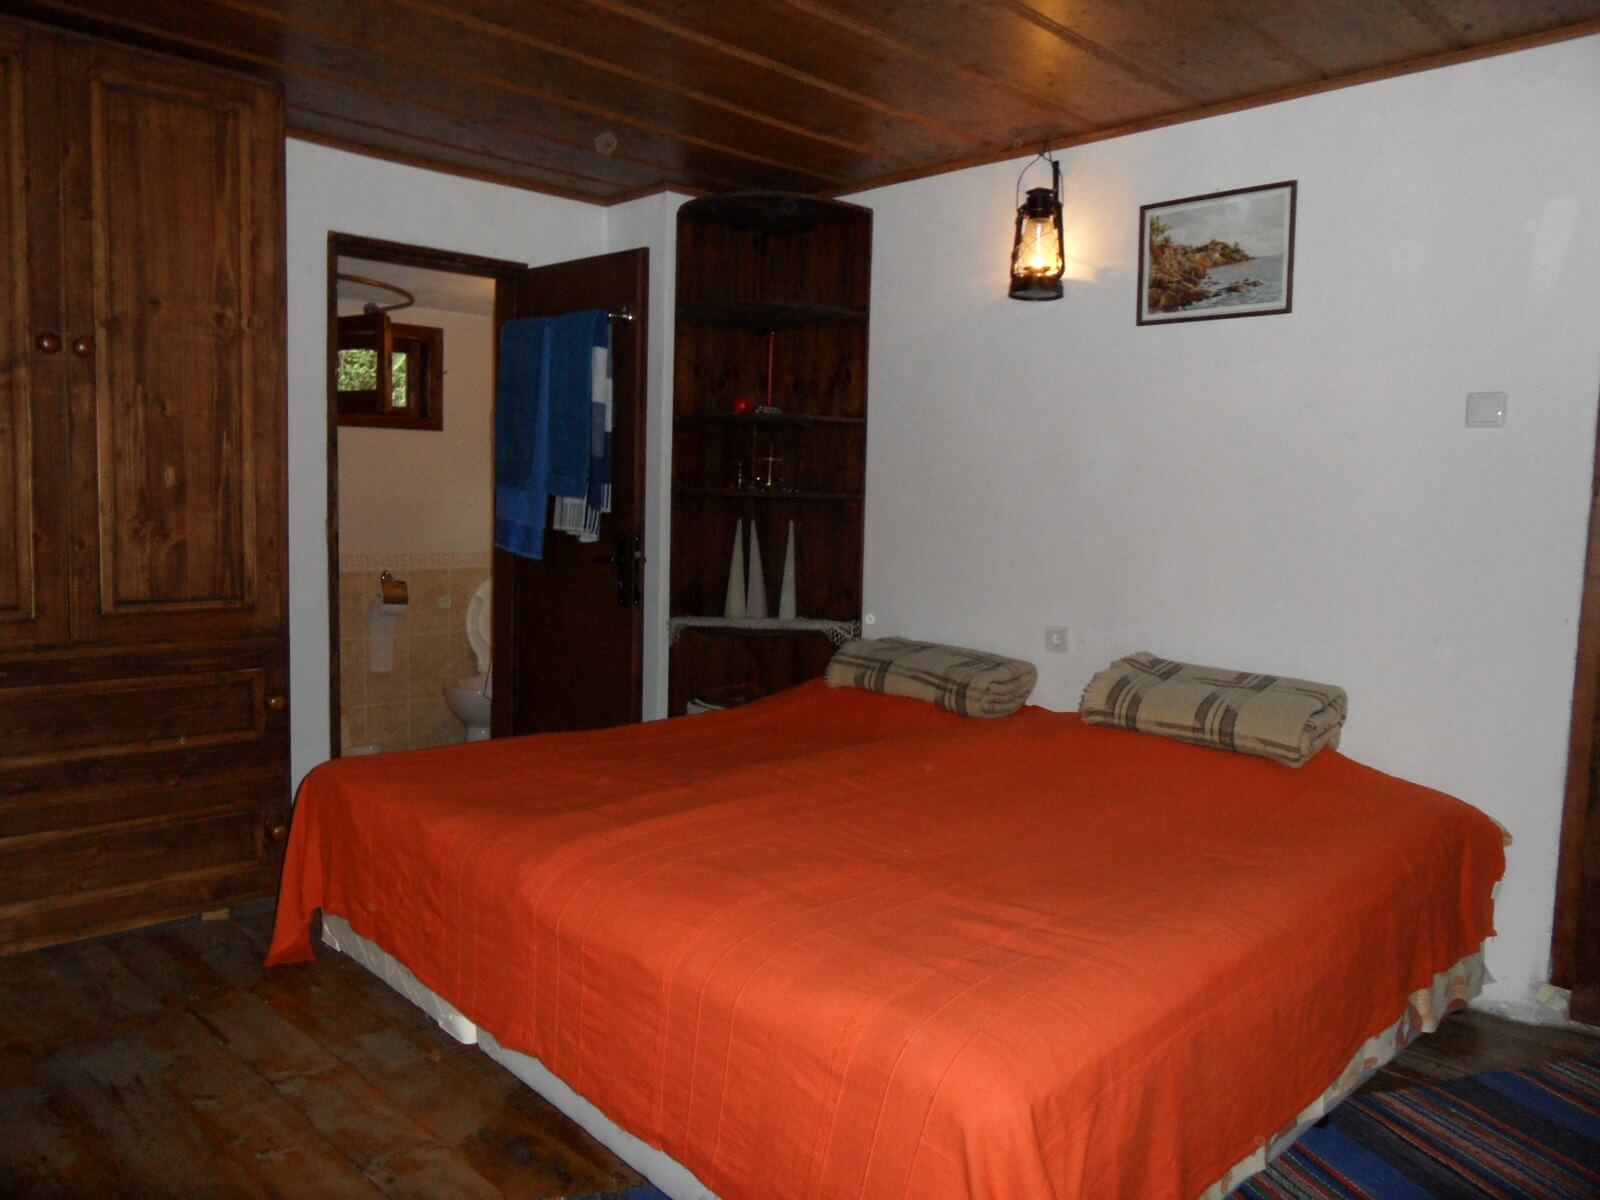 Floor 2 - Bedroom